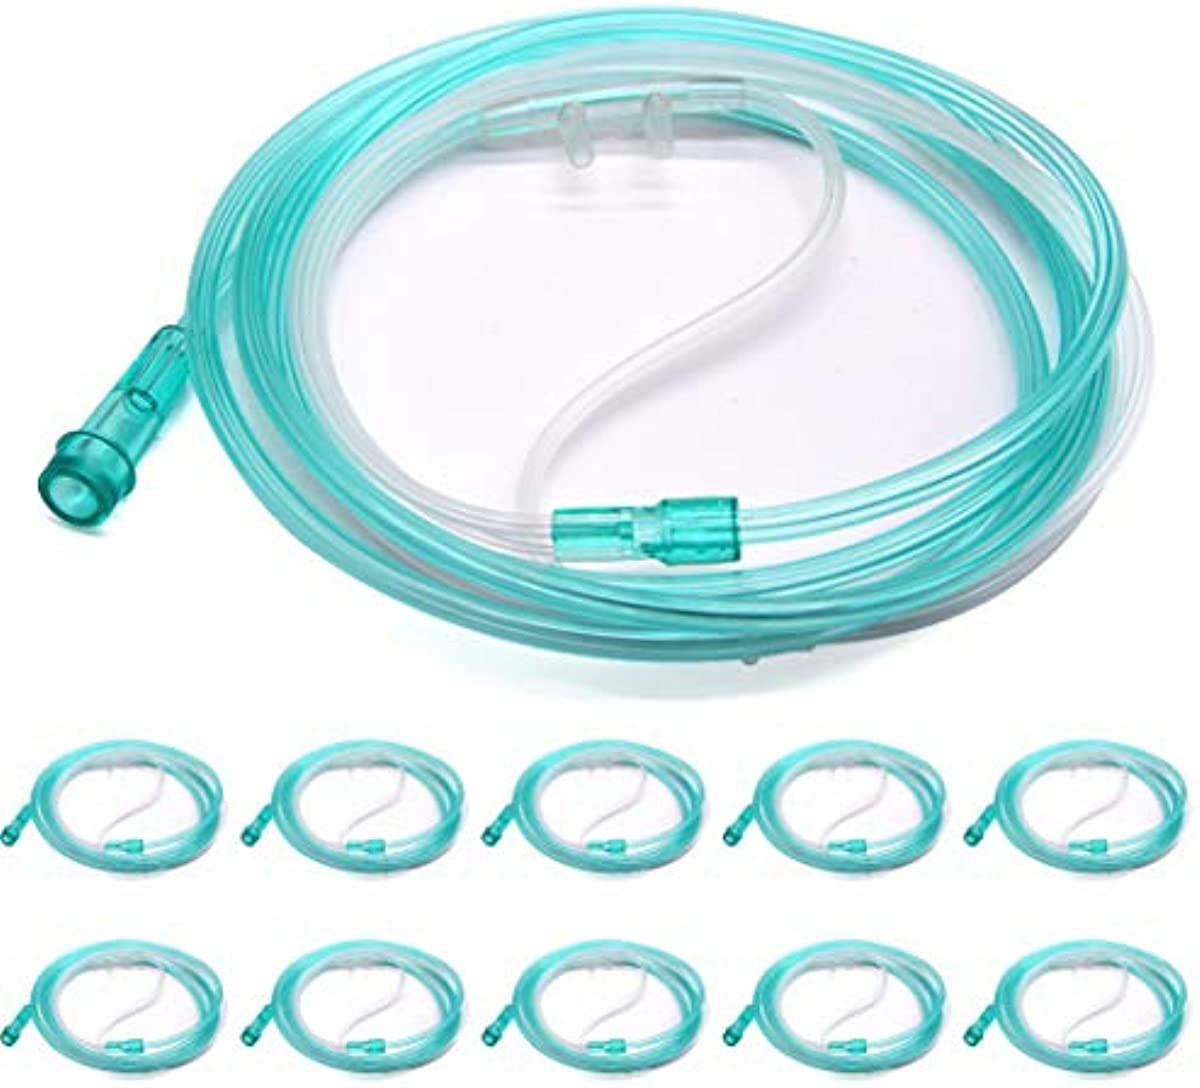 Healva 10 Pack High-Flow Soft Nasal Oxygen Cannula, Standard Connector 6.6 Feet, Green Tubing